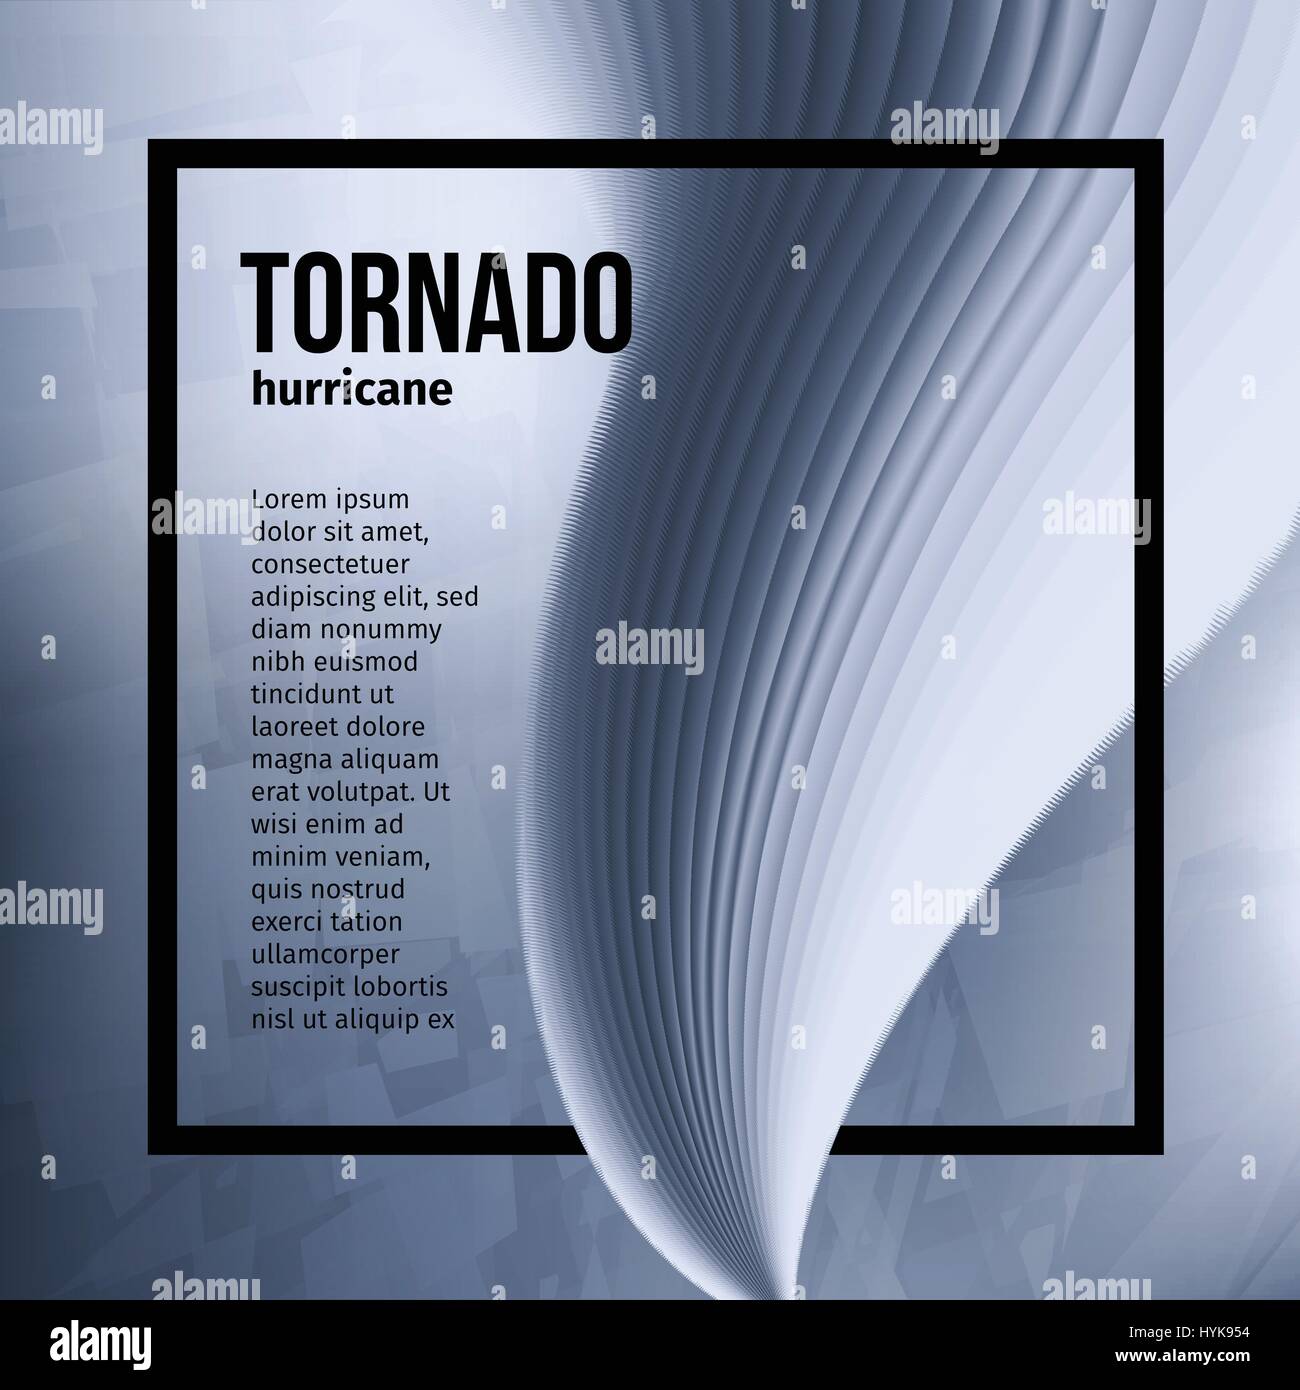 Isolierte abstrakte Tornado Hurrikan, Naturkatastrophe-Vektor-illustration Stock Vektor